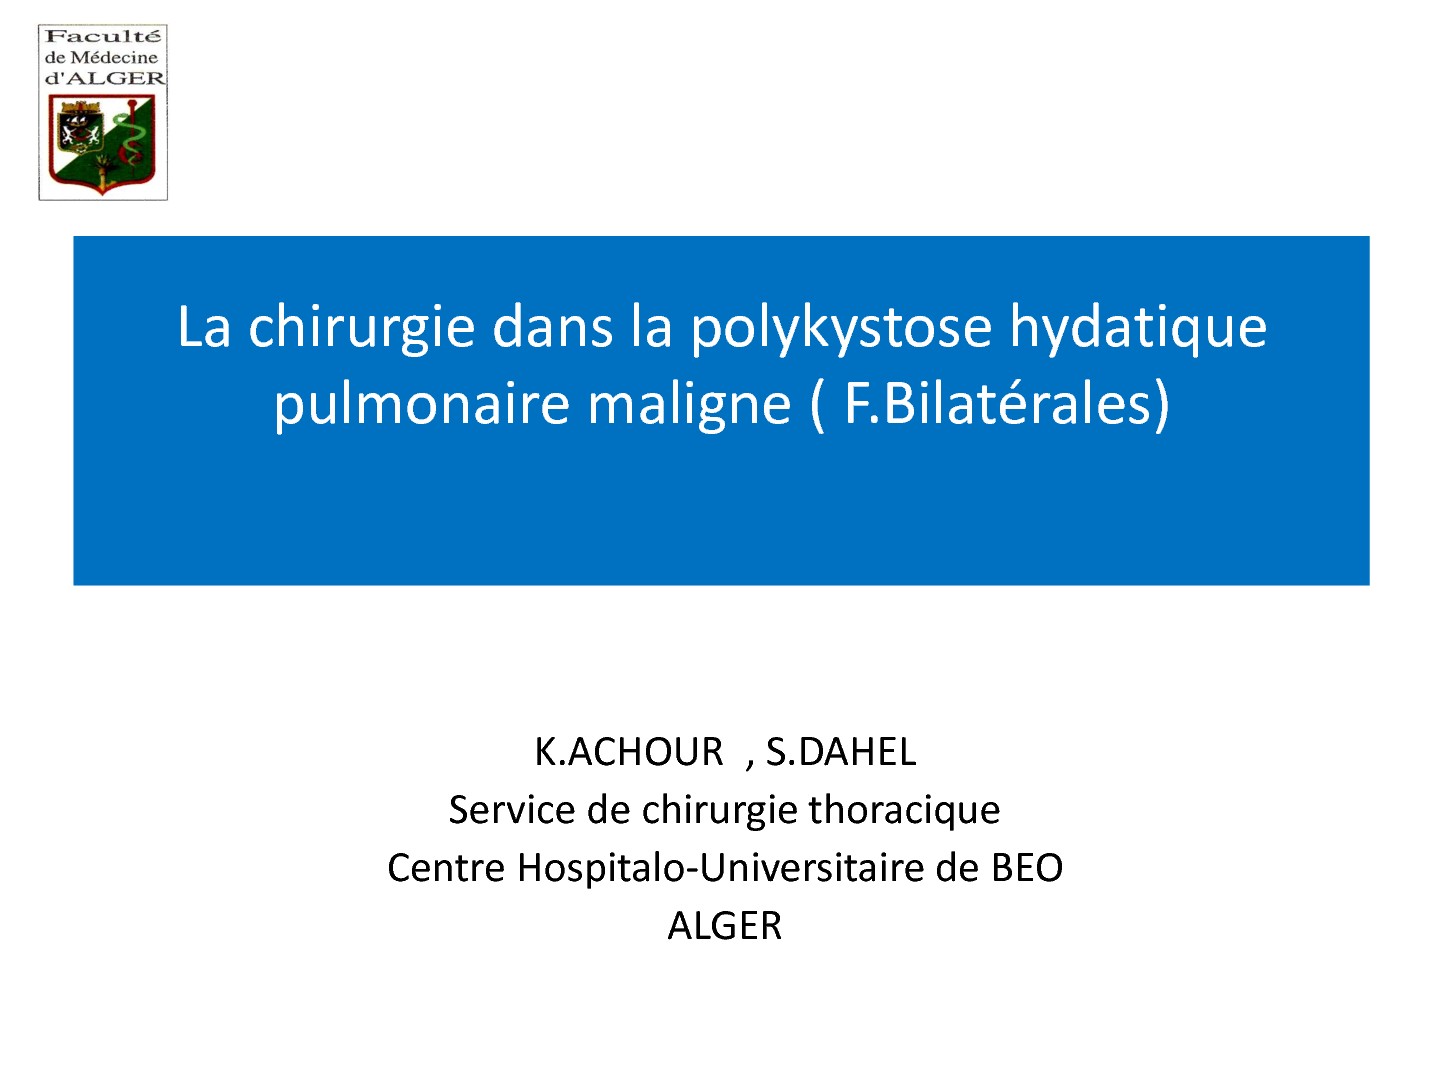 La chirurgie dans la polykystose hydatique pulmonaire maligne (formes bilatérales). K. Achour